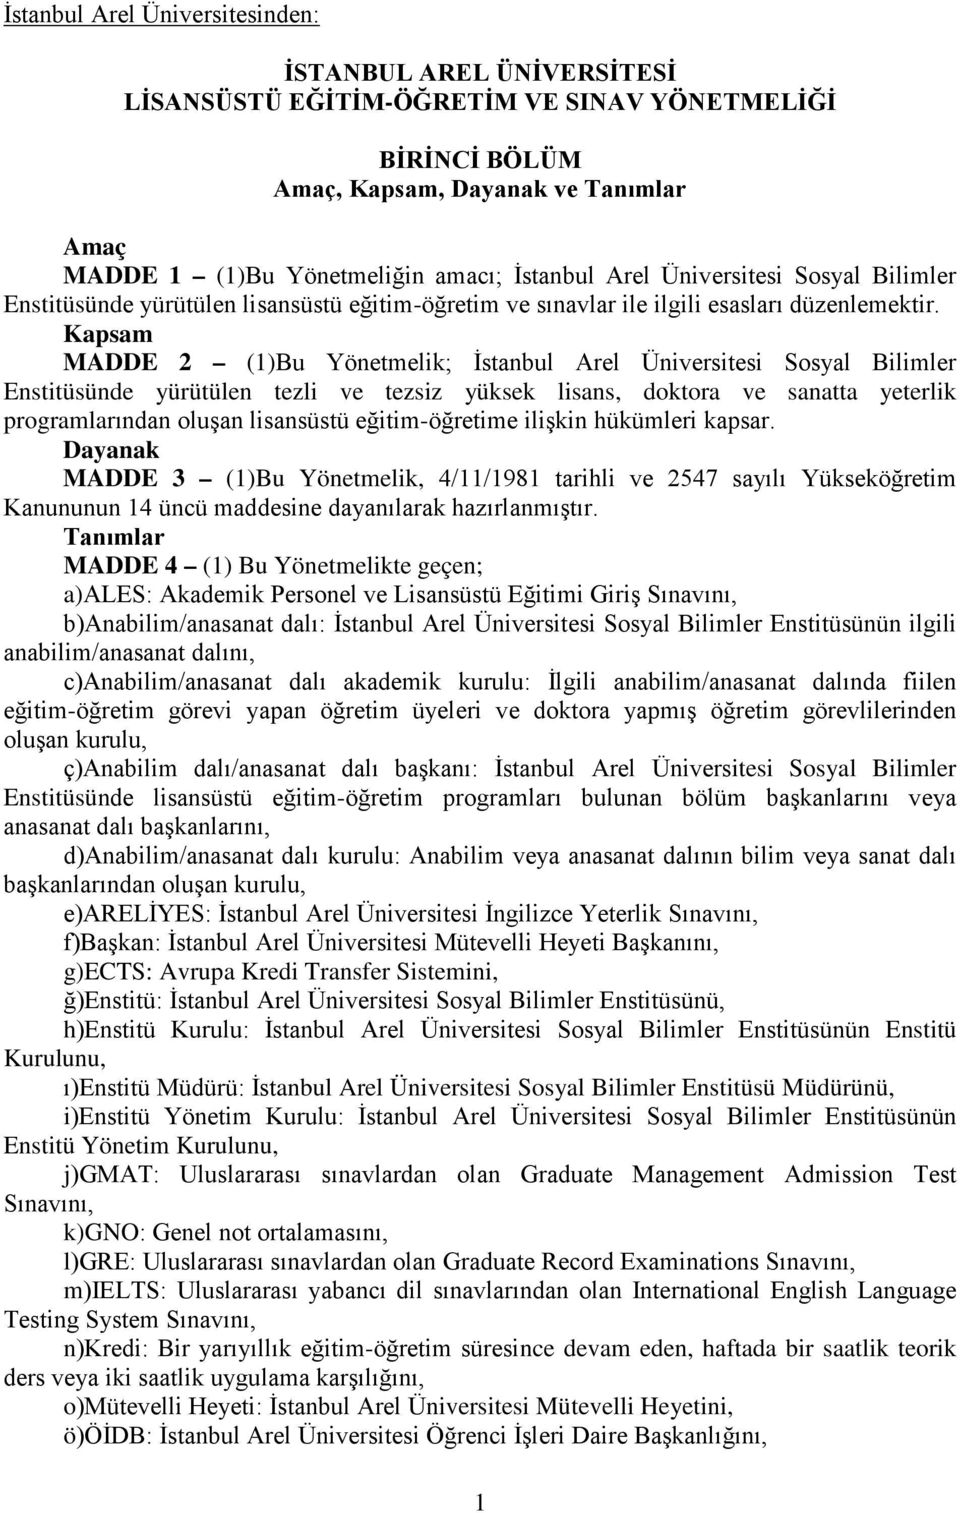 Kapsam MADDE 2 (1)Bu Yönetmelik; İstanbul Arel Üniversitesi Sosyal Bilimler Enstitüsünde yürütülen tezli ve tezsiz yüksek lisans, doktora ve sanatta yeterlik programlarından oluşan lisansüstü